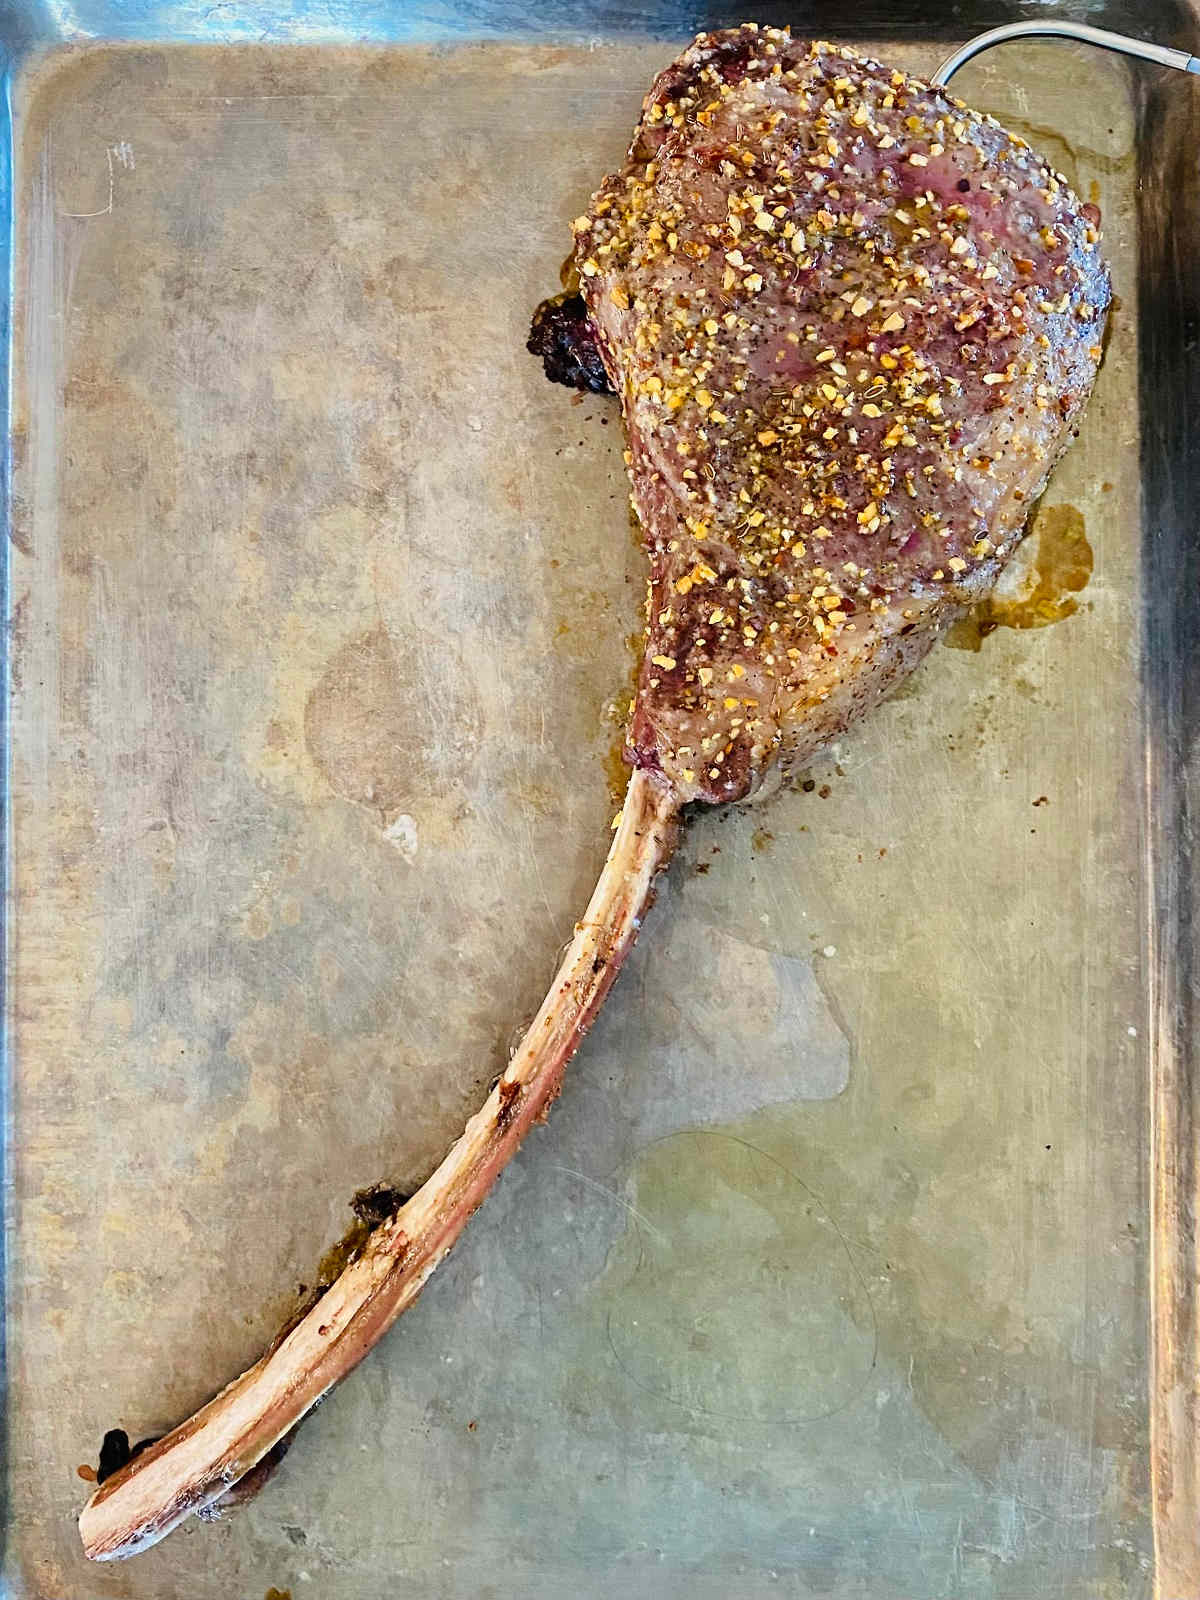 reverse sear tomahawk steak oven.